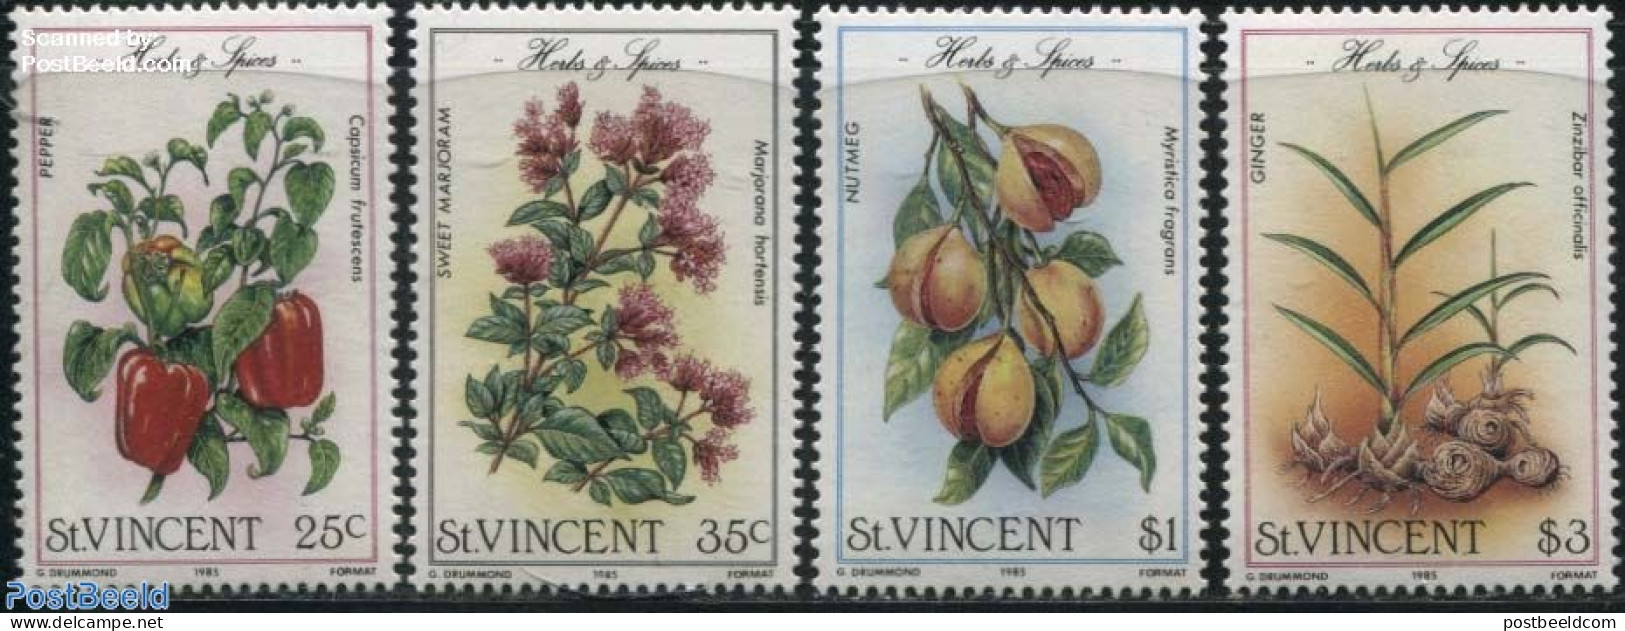 Saint Vincent 1985 Flowers & Fruits 4v, Mint NH, Nature - Flowers & Plants - Fruit - Fruits